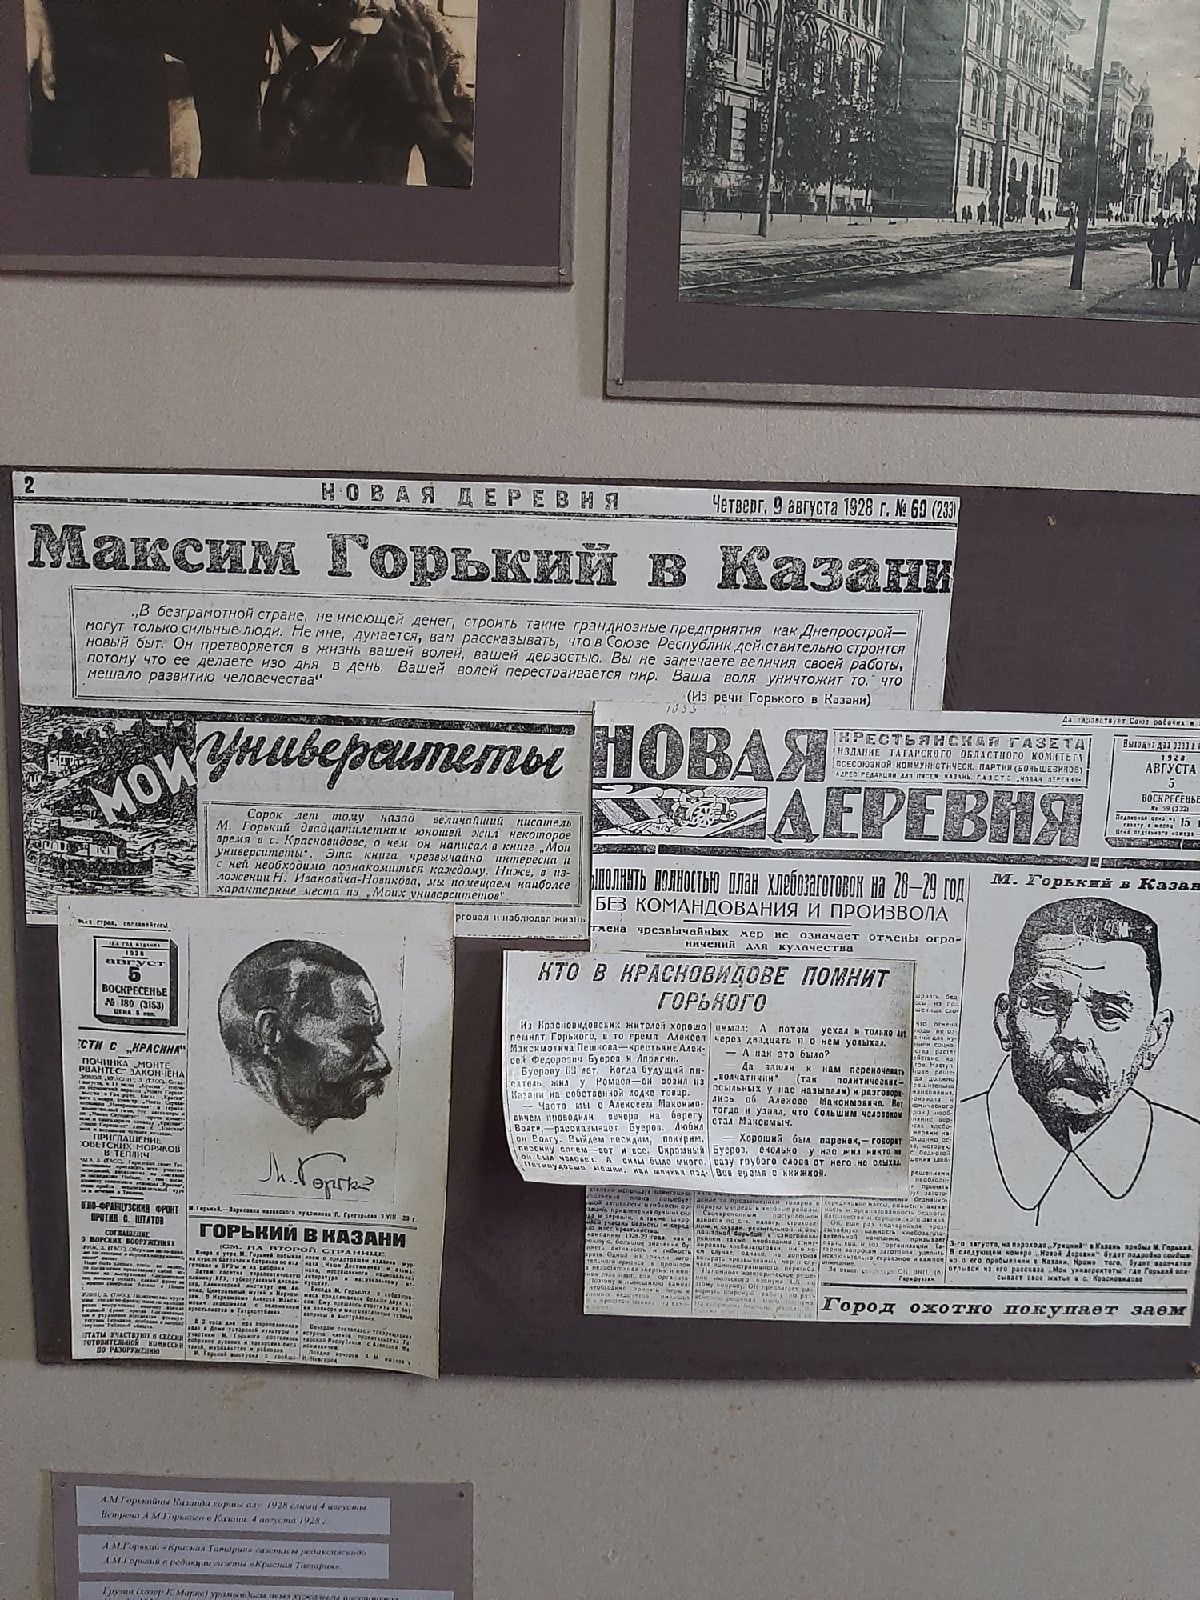 Верхнеуслонцы побывали в музее Горького в Красновидове